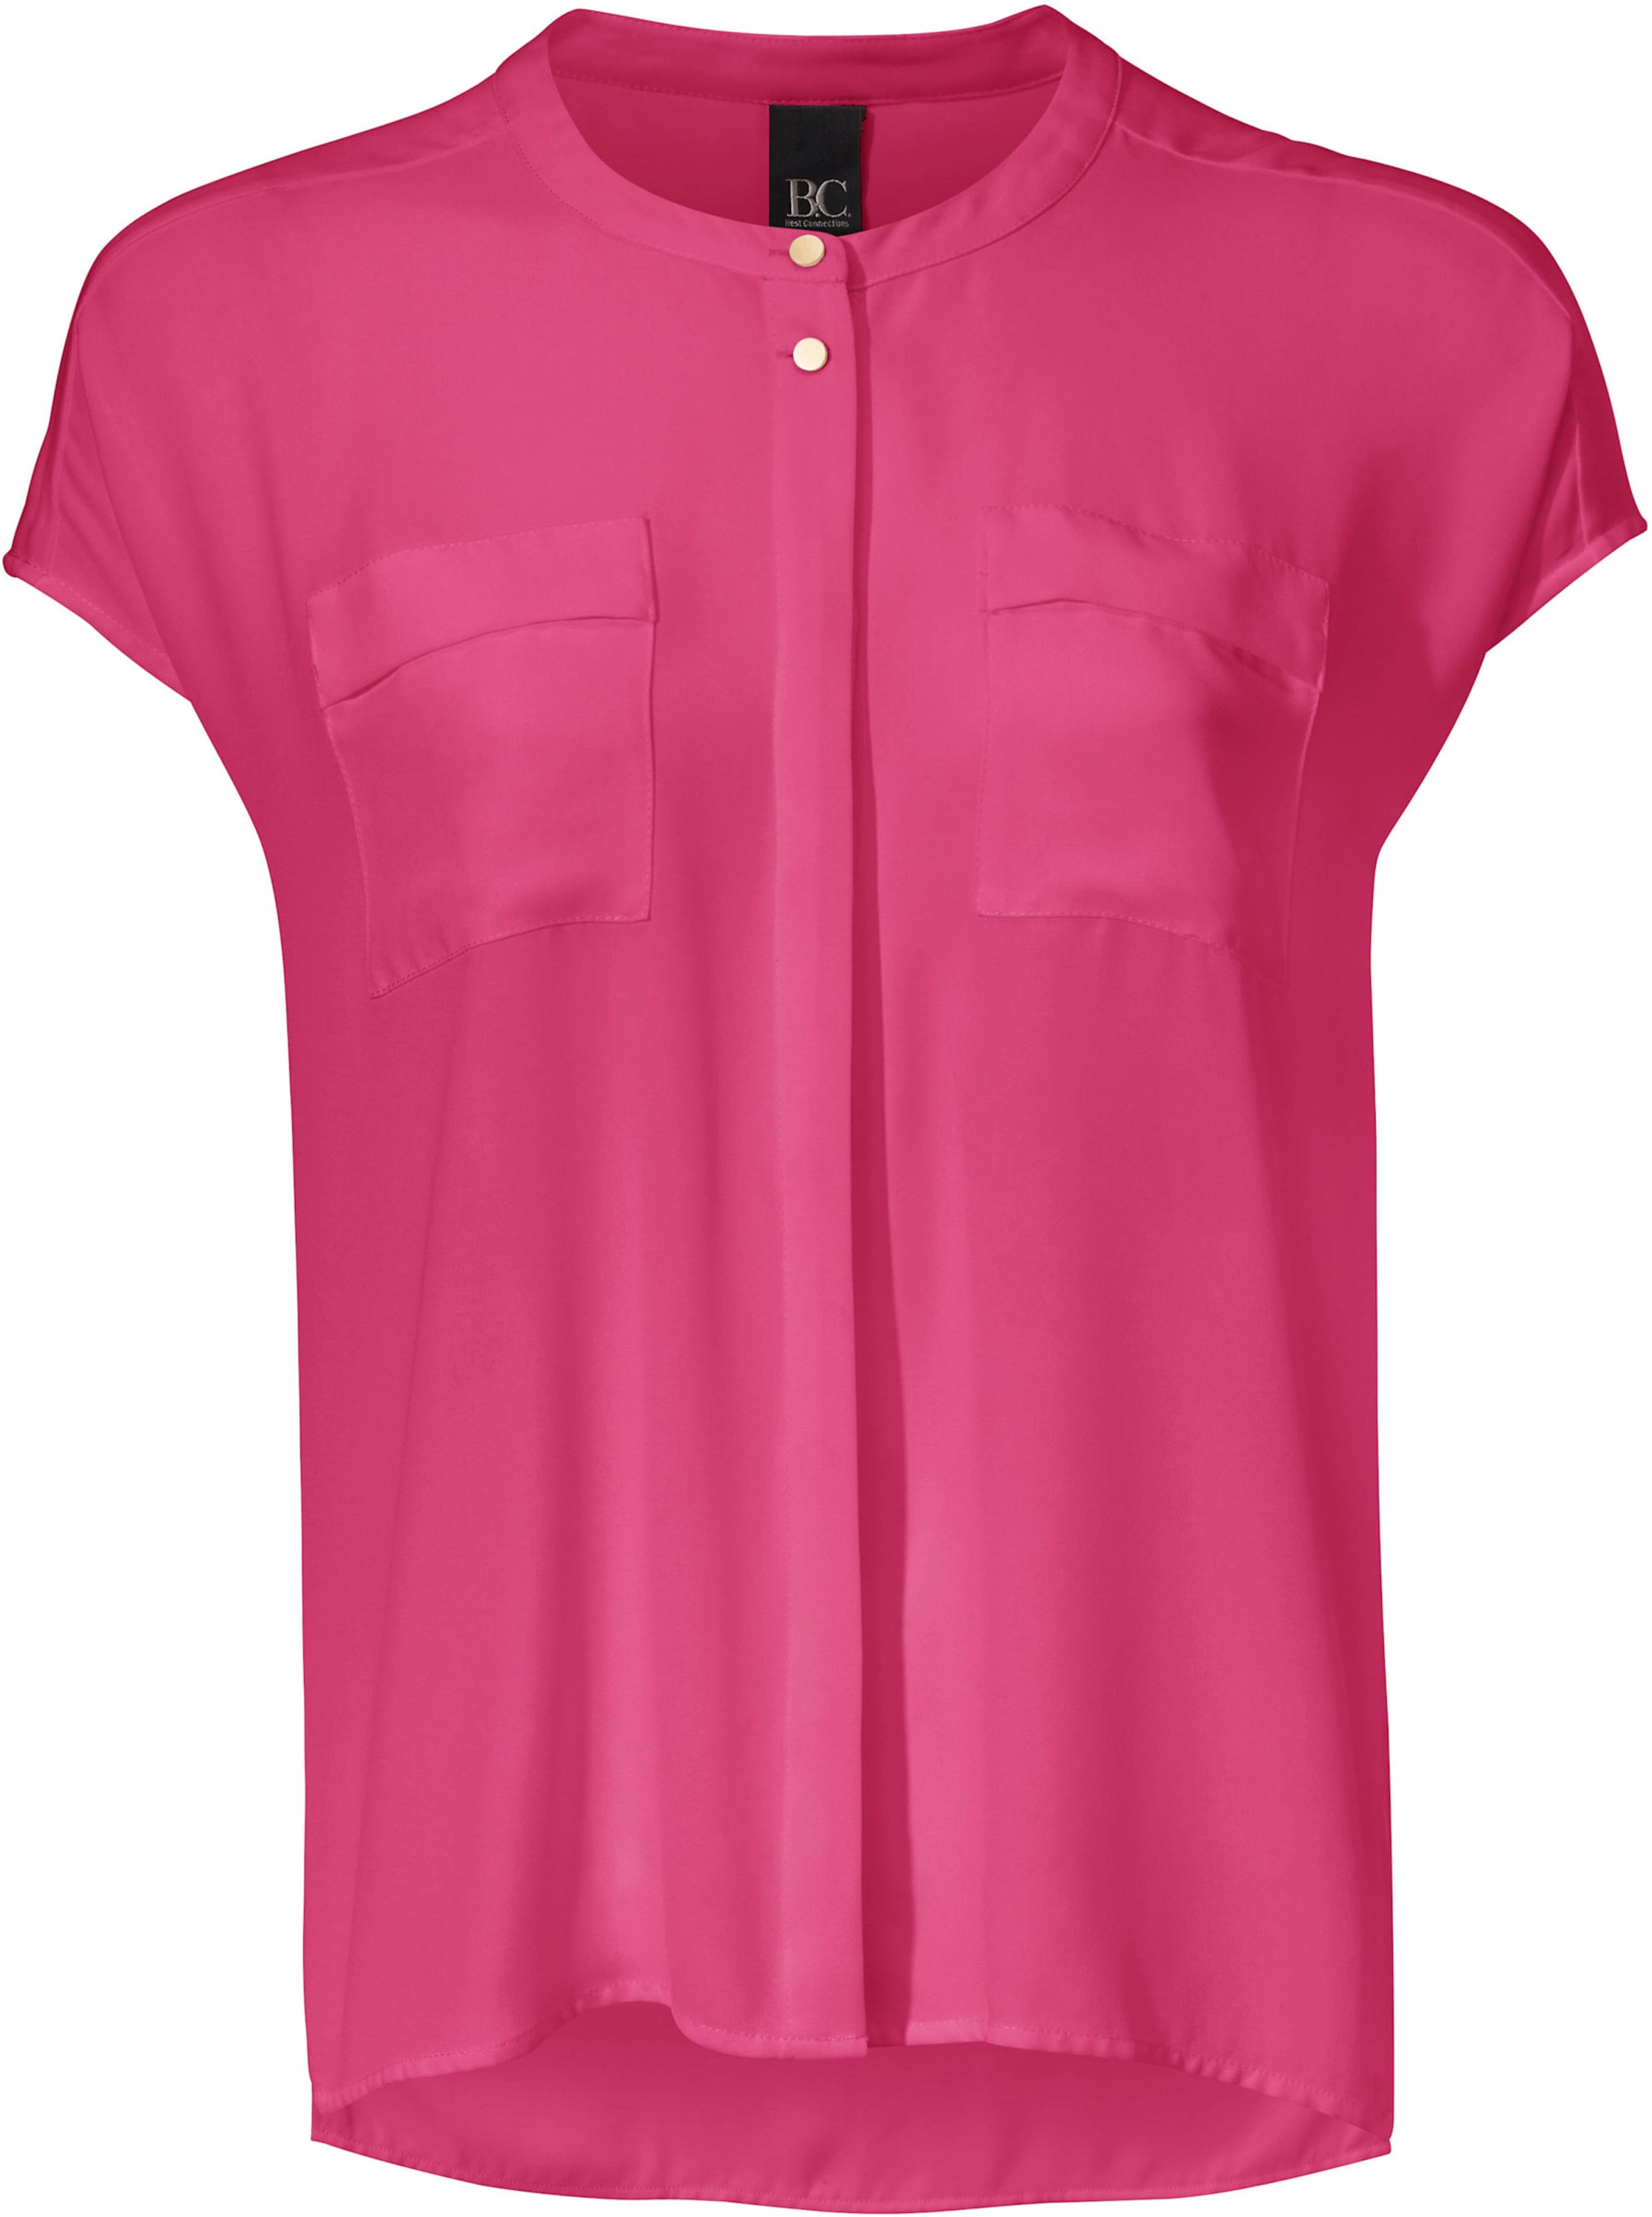 Witt Weiden Damen Oversized Bluse pink  - Onlineshop Witt Weiden